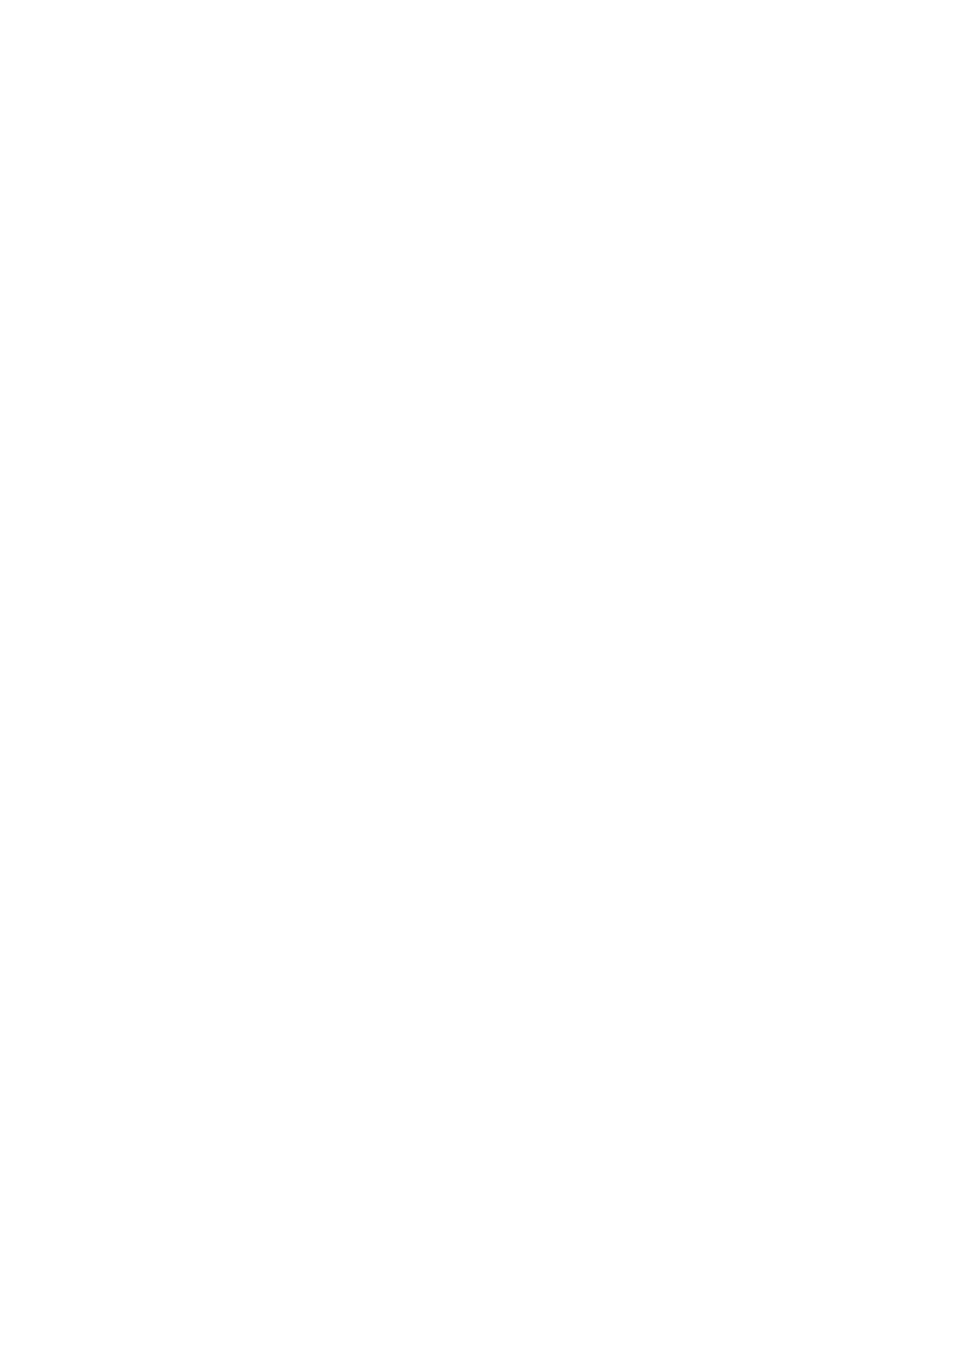 PS 37/2014 Tiltak ved Deanu sámeskuvla før skolestart høsten 2014 Saksprotokoll saksnr. 37/2014 i Kommunestyret - 12.06.2014 Ordfører Frank M.